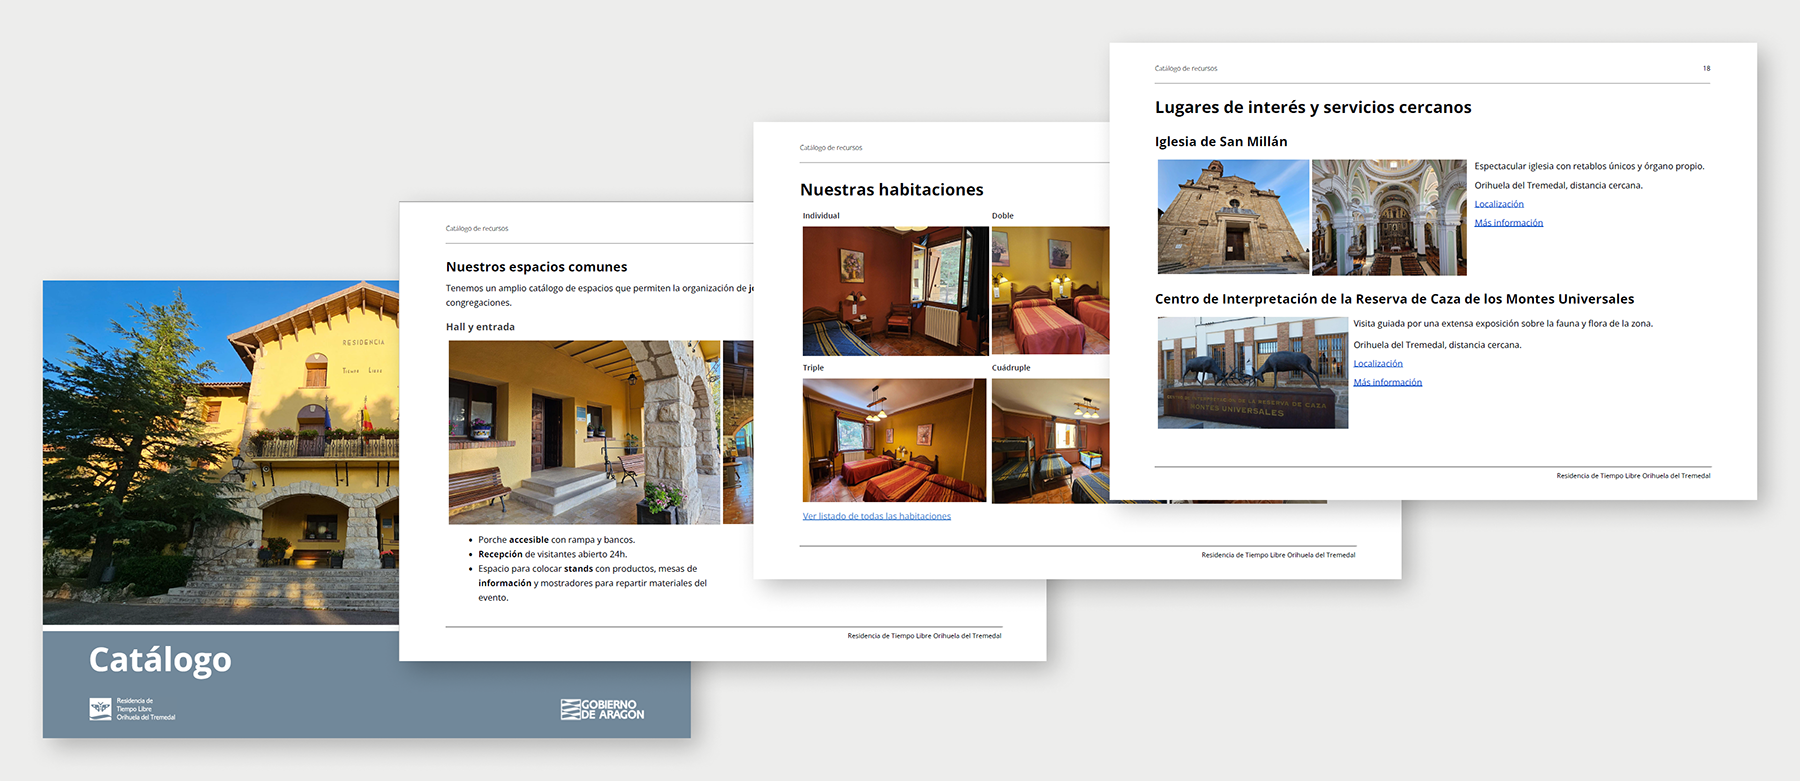 Páginas del catálogo que muestra las habitaciones, espacios y servicios cercanos de la residencia